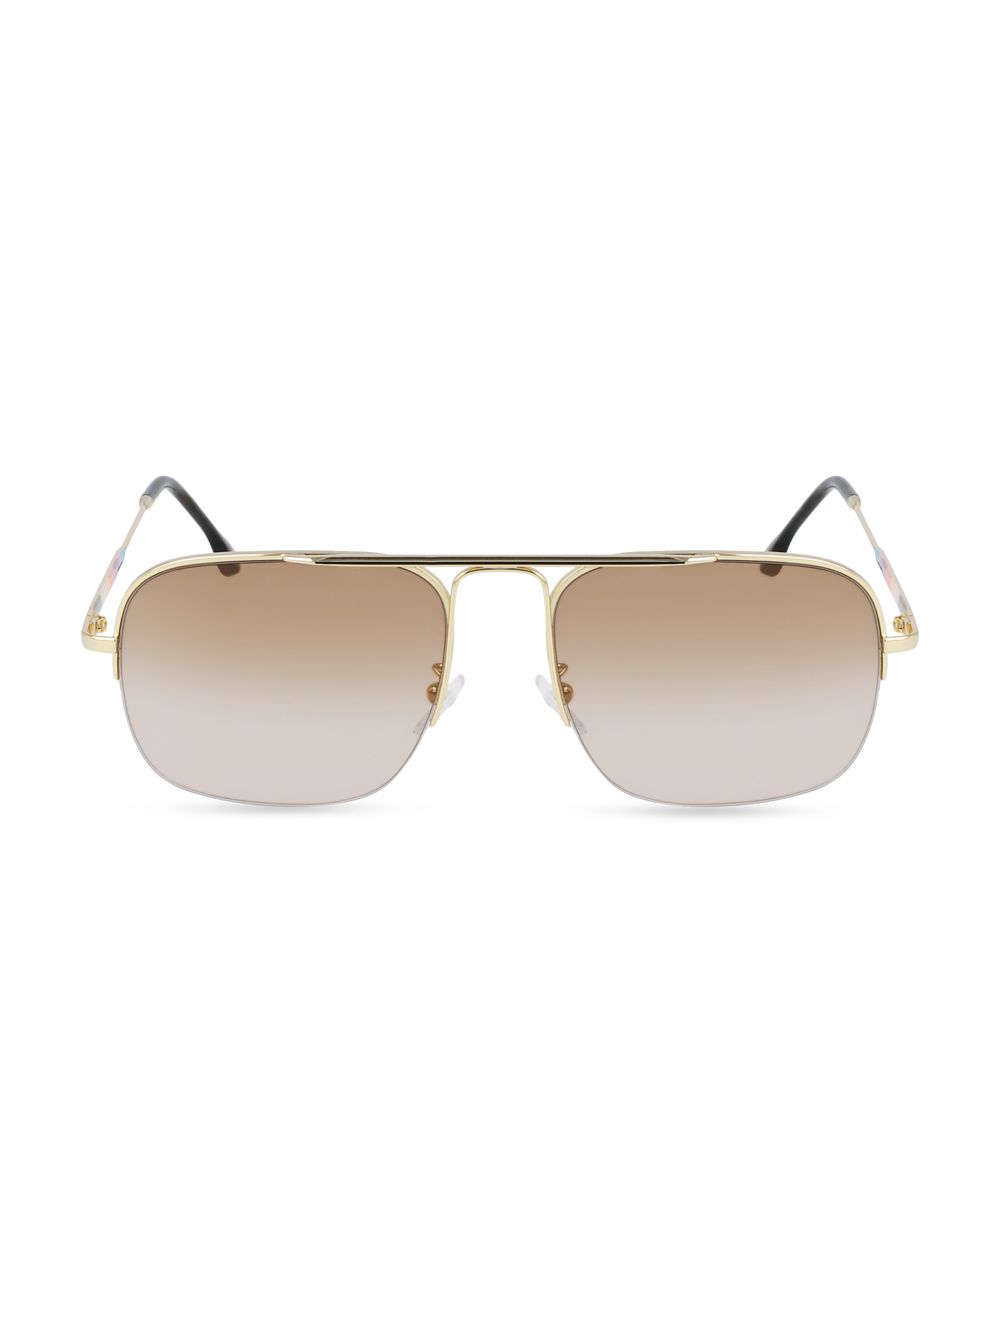 Прямоугольные солнцезащитные очки Clifton 58 мм Paul Smith, золотой